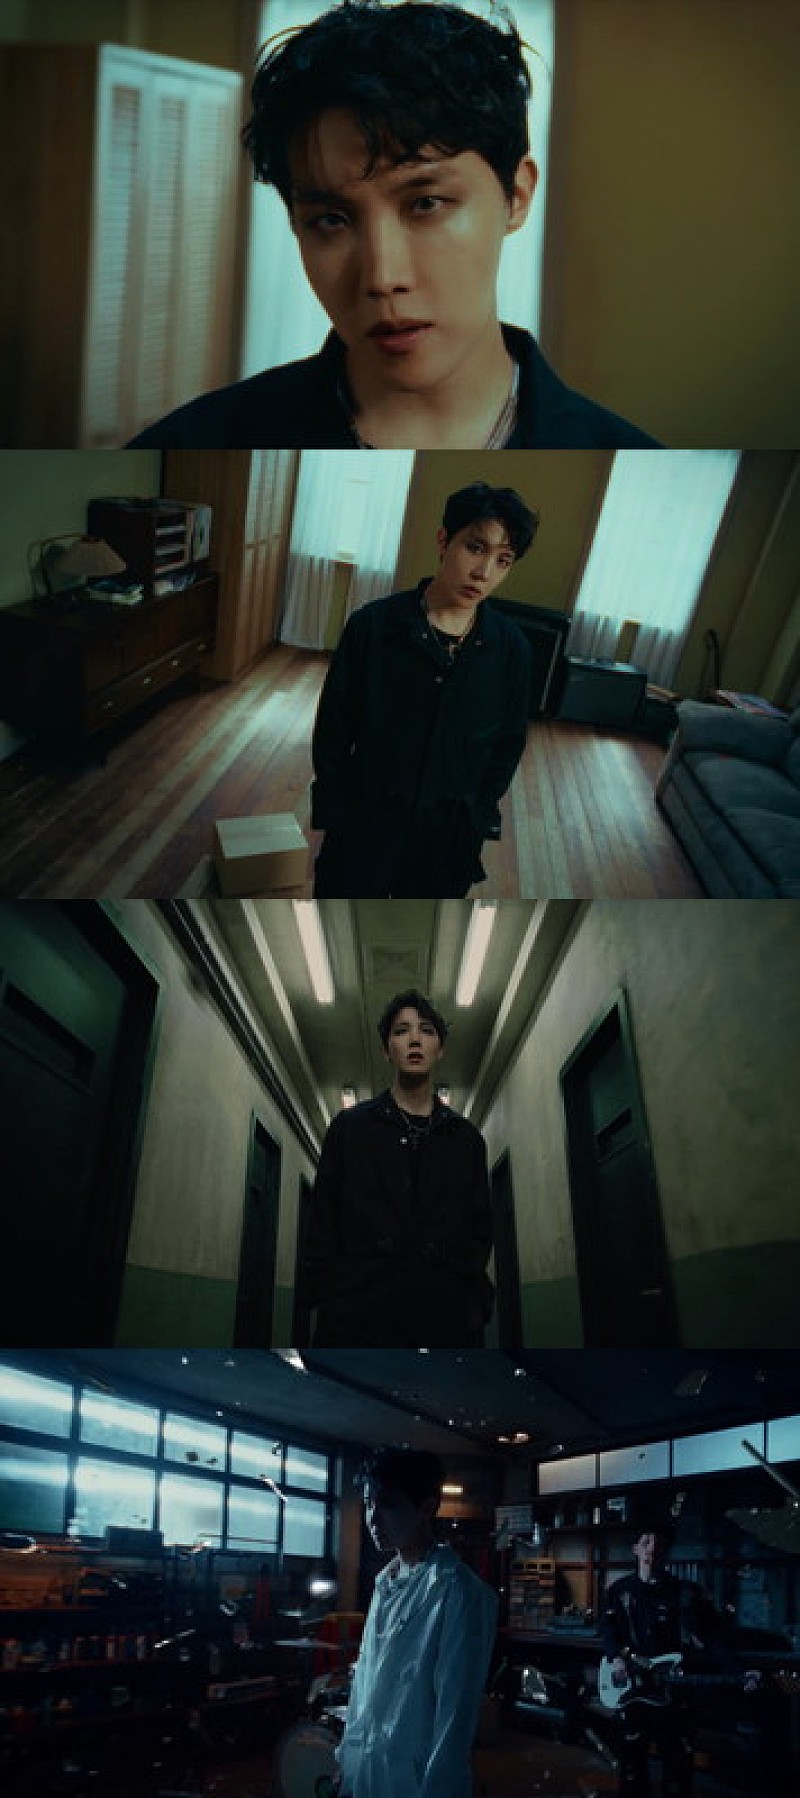 J-HOPE（BTS）、シャウトも魅力のソロ楽曲「MORE」暗く強烈なMV公開